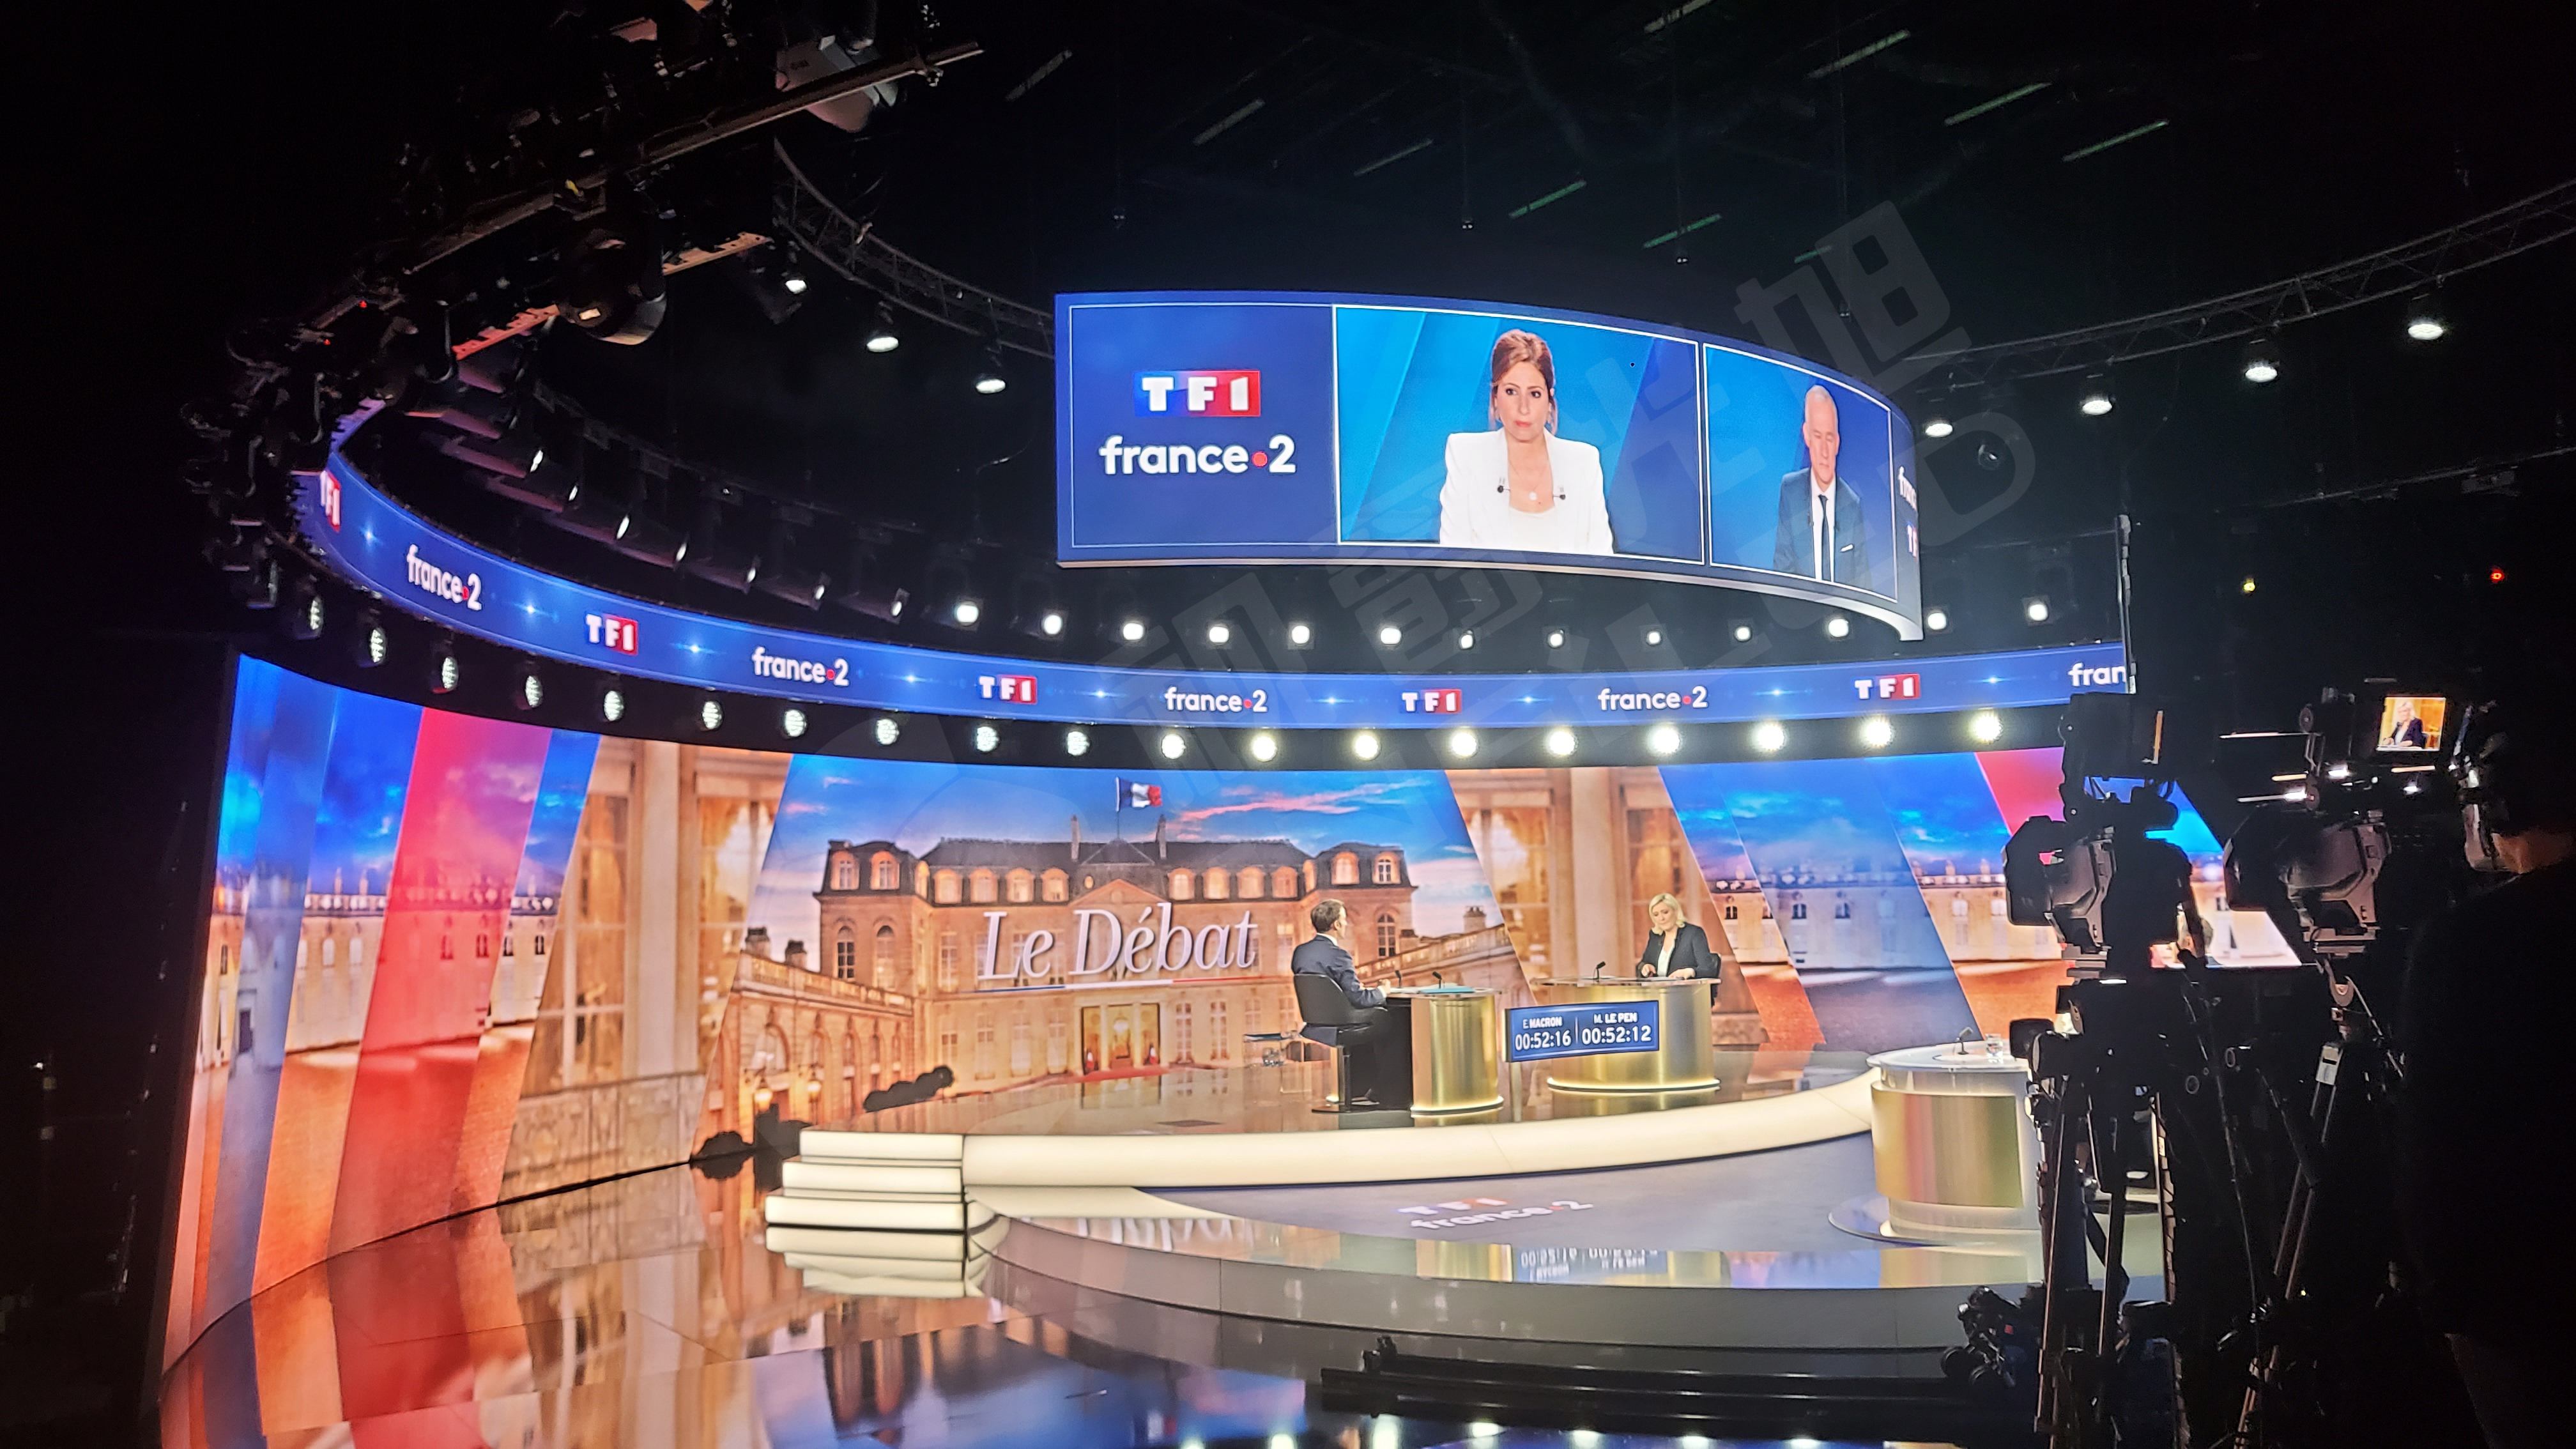 视爵光旭为2022法国总统大选电视辩论舞台提供LED显示屏支持